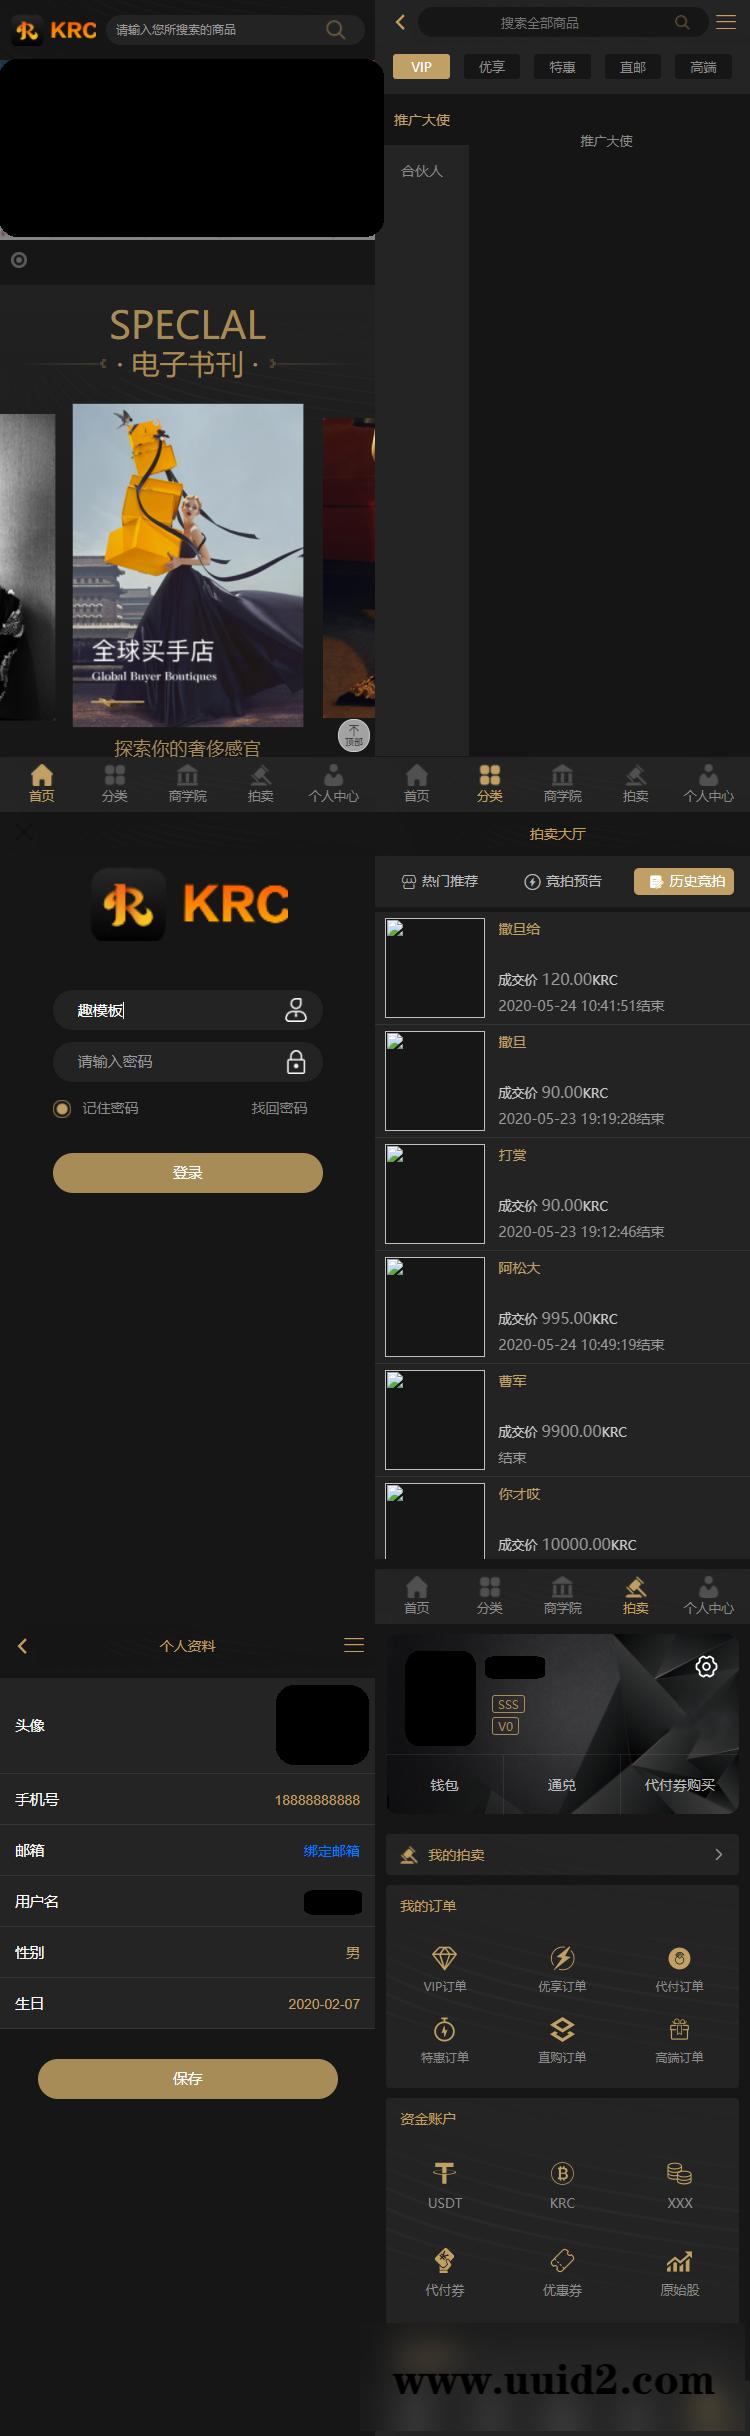 KRC跨境商城系统 拍卖系统 竞拍系统 高端商城 虚拟币支付源码